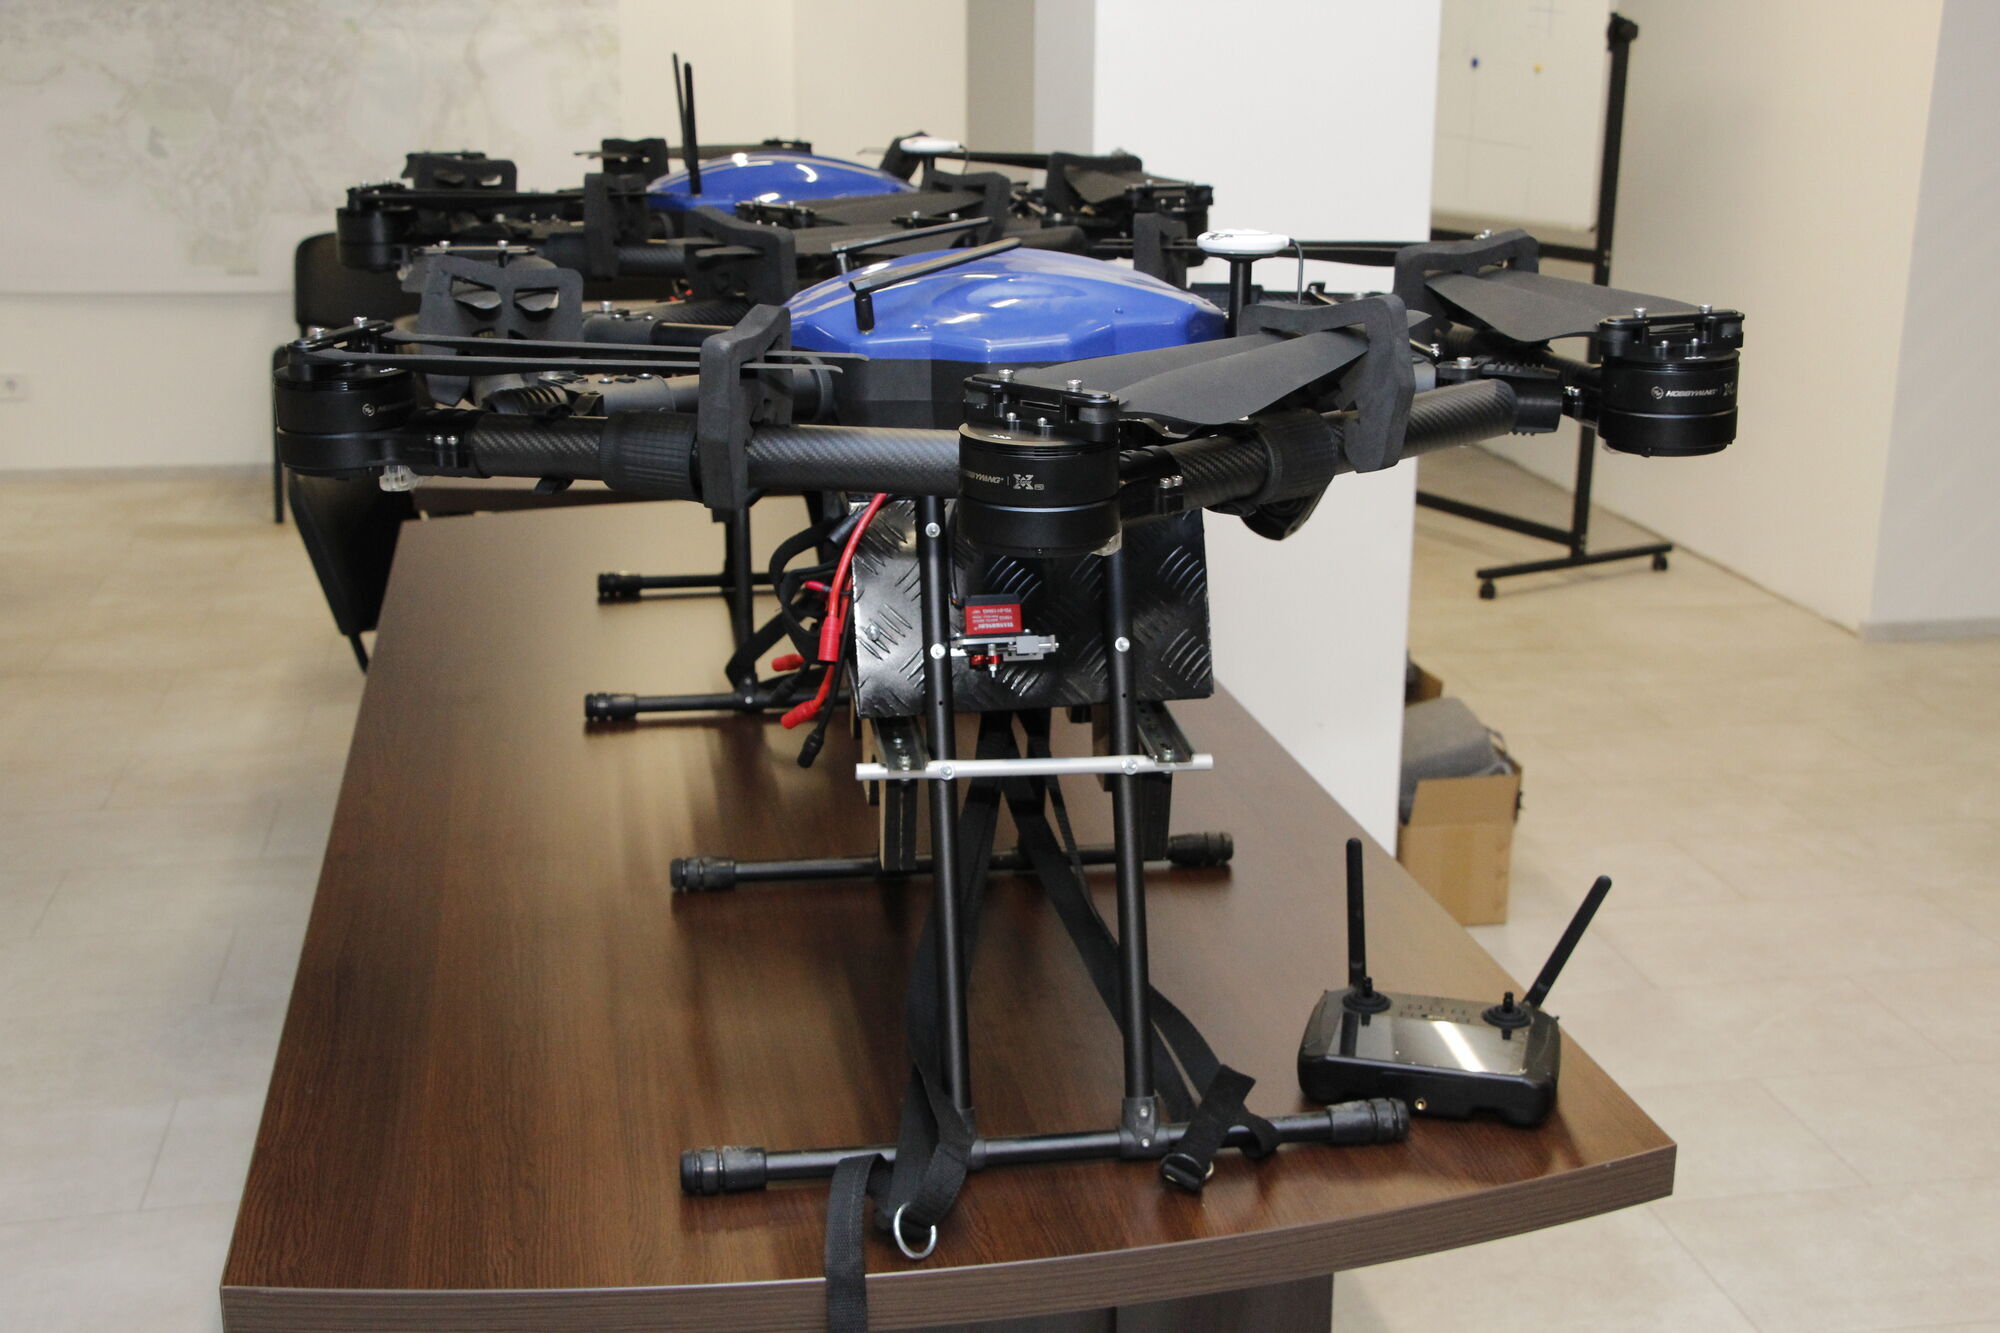 Операторы "Летучие мыши" прошли соответствующие тренинги, чтобы по максимуму использовать возможности дронов